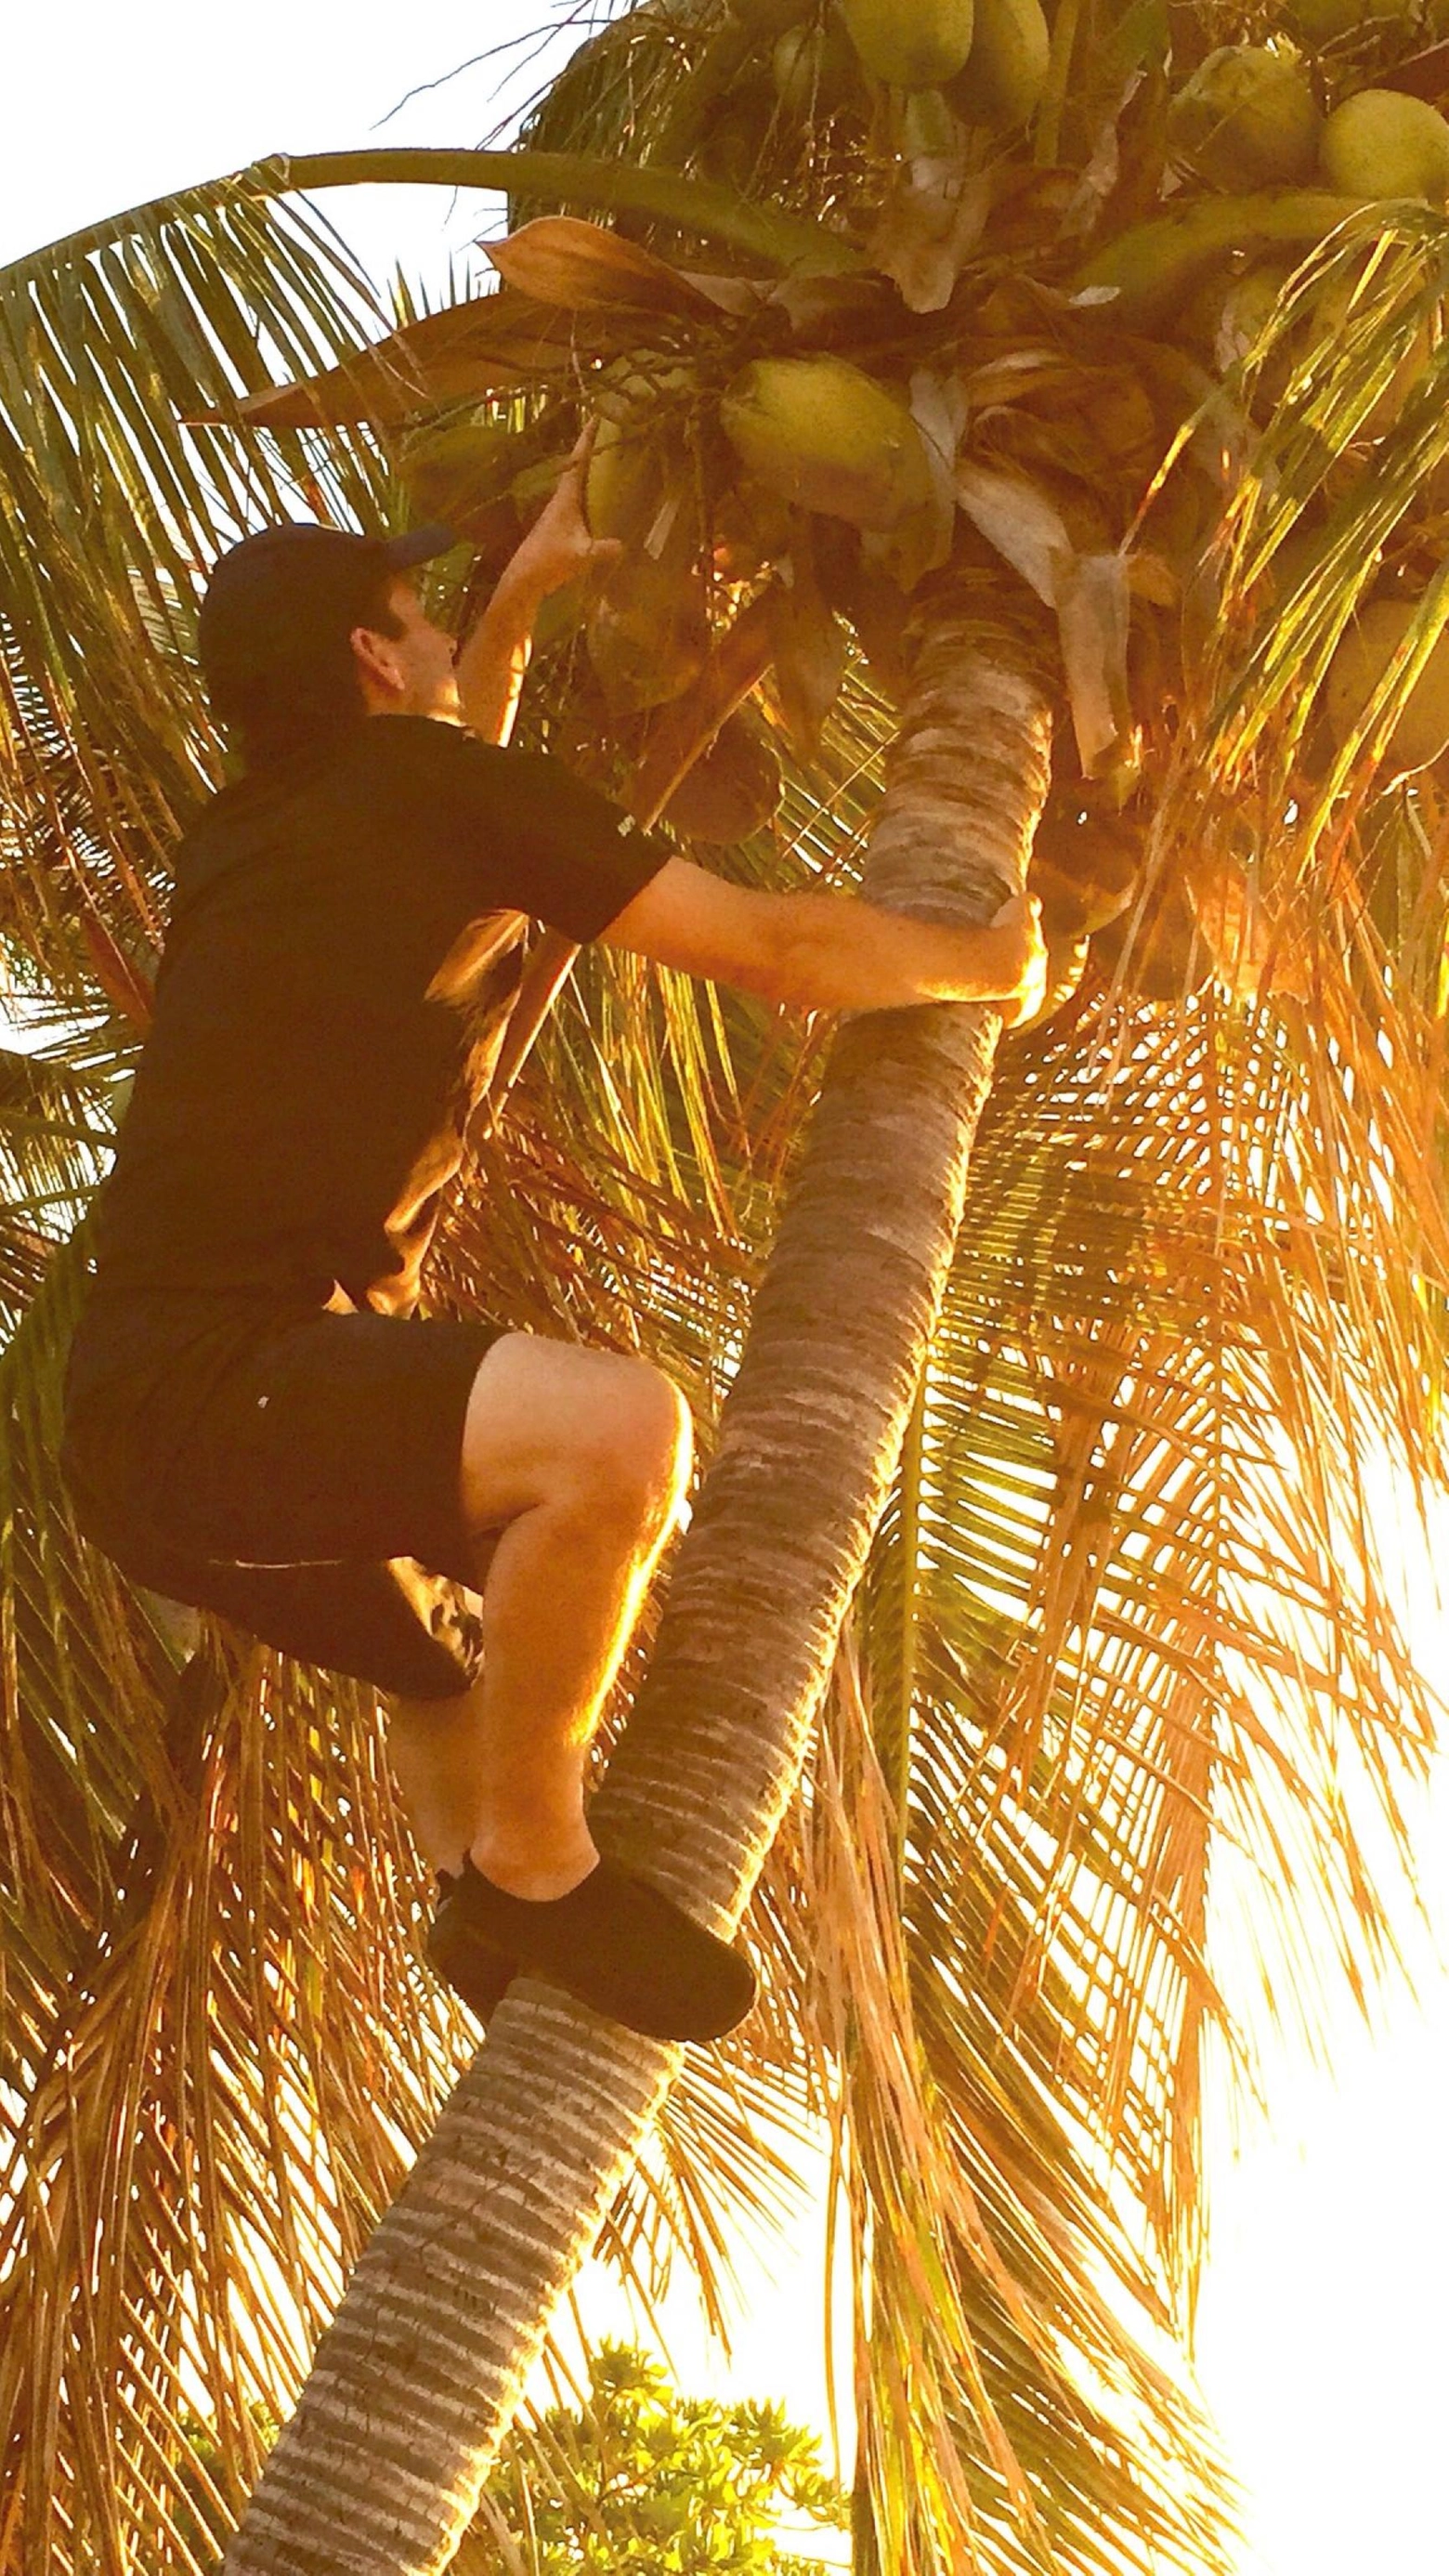 Con Kamala in pole position spopola sui social l'albero di cocco